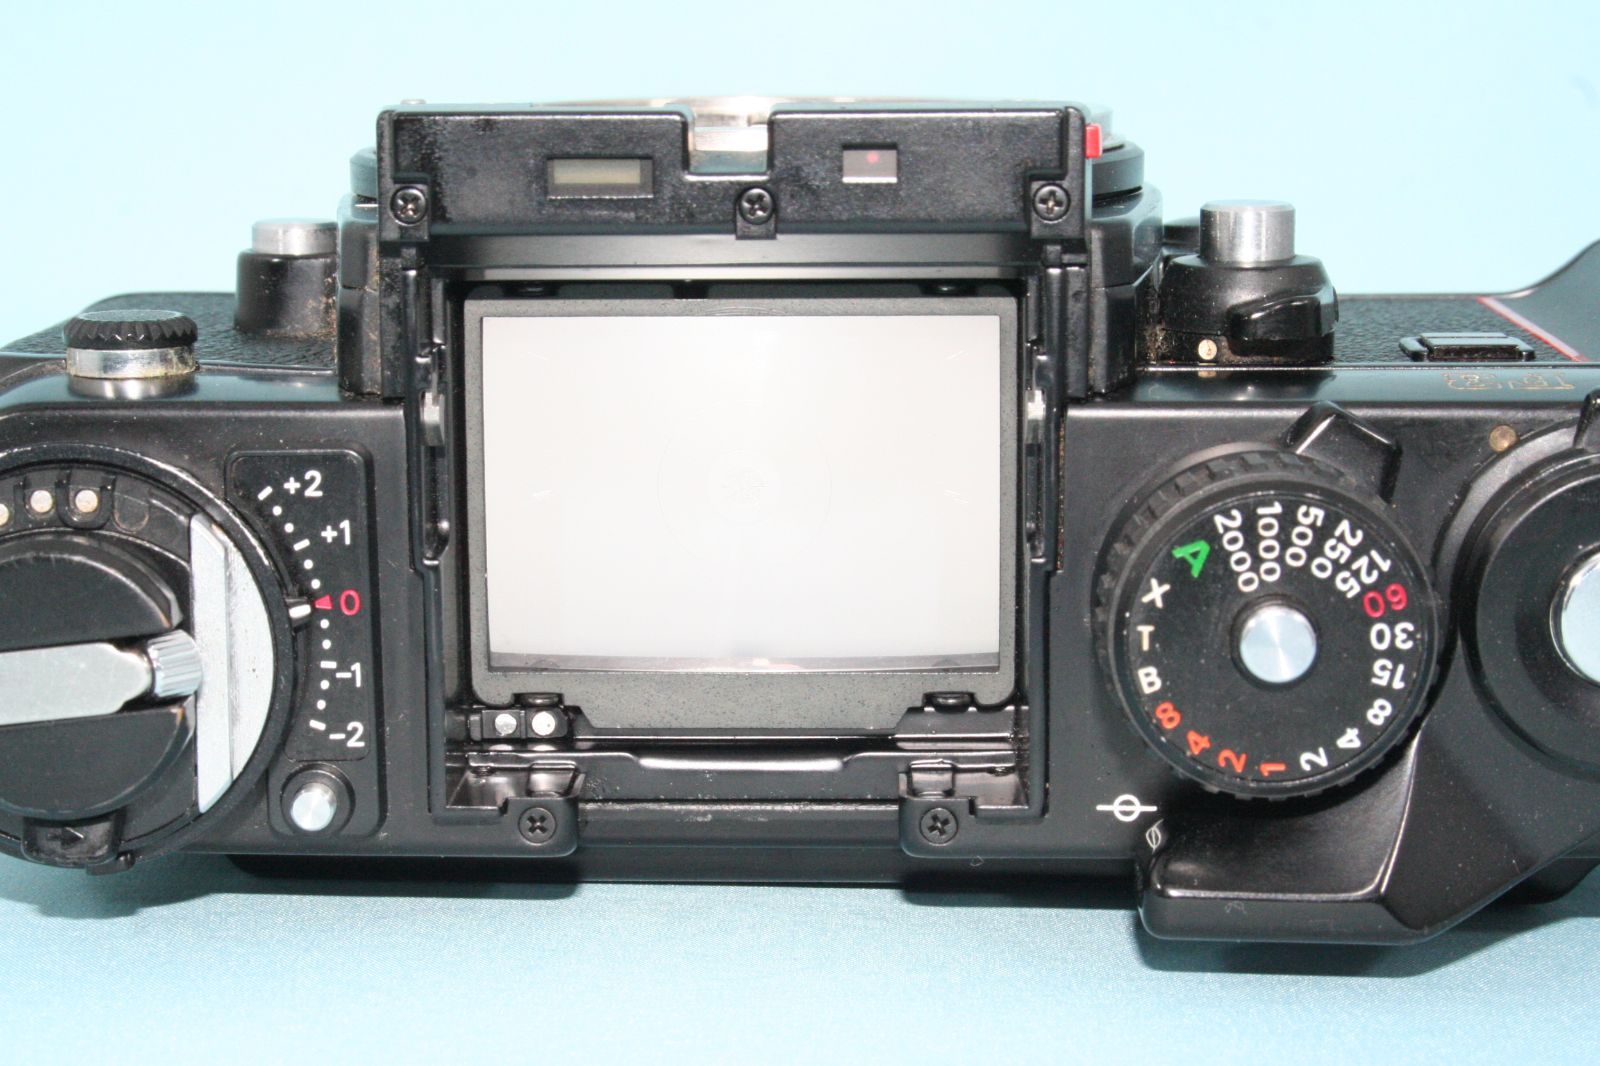 完動美品 Nikon F3 HP + MF-14 データバック 一眼レフフィルムカメラ